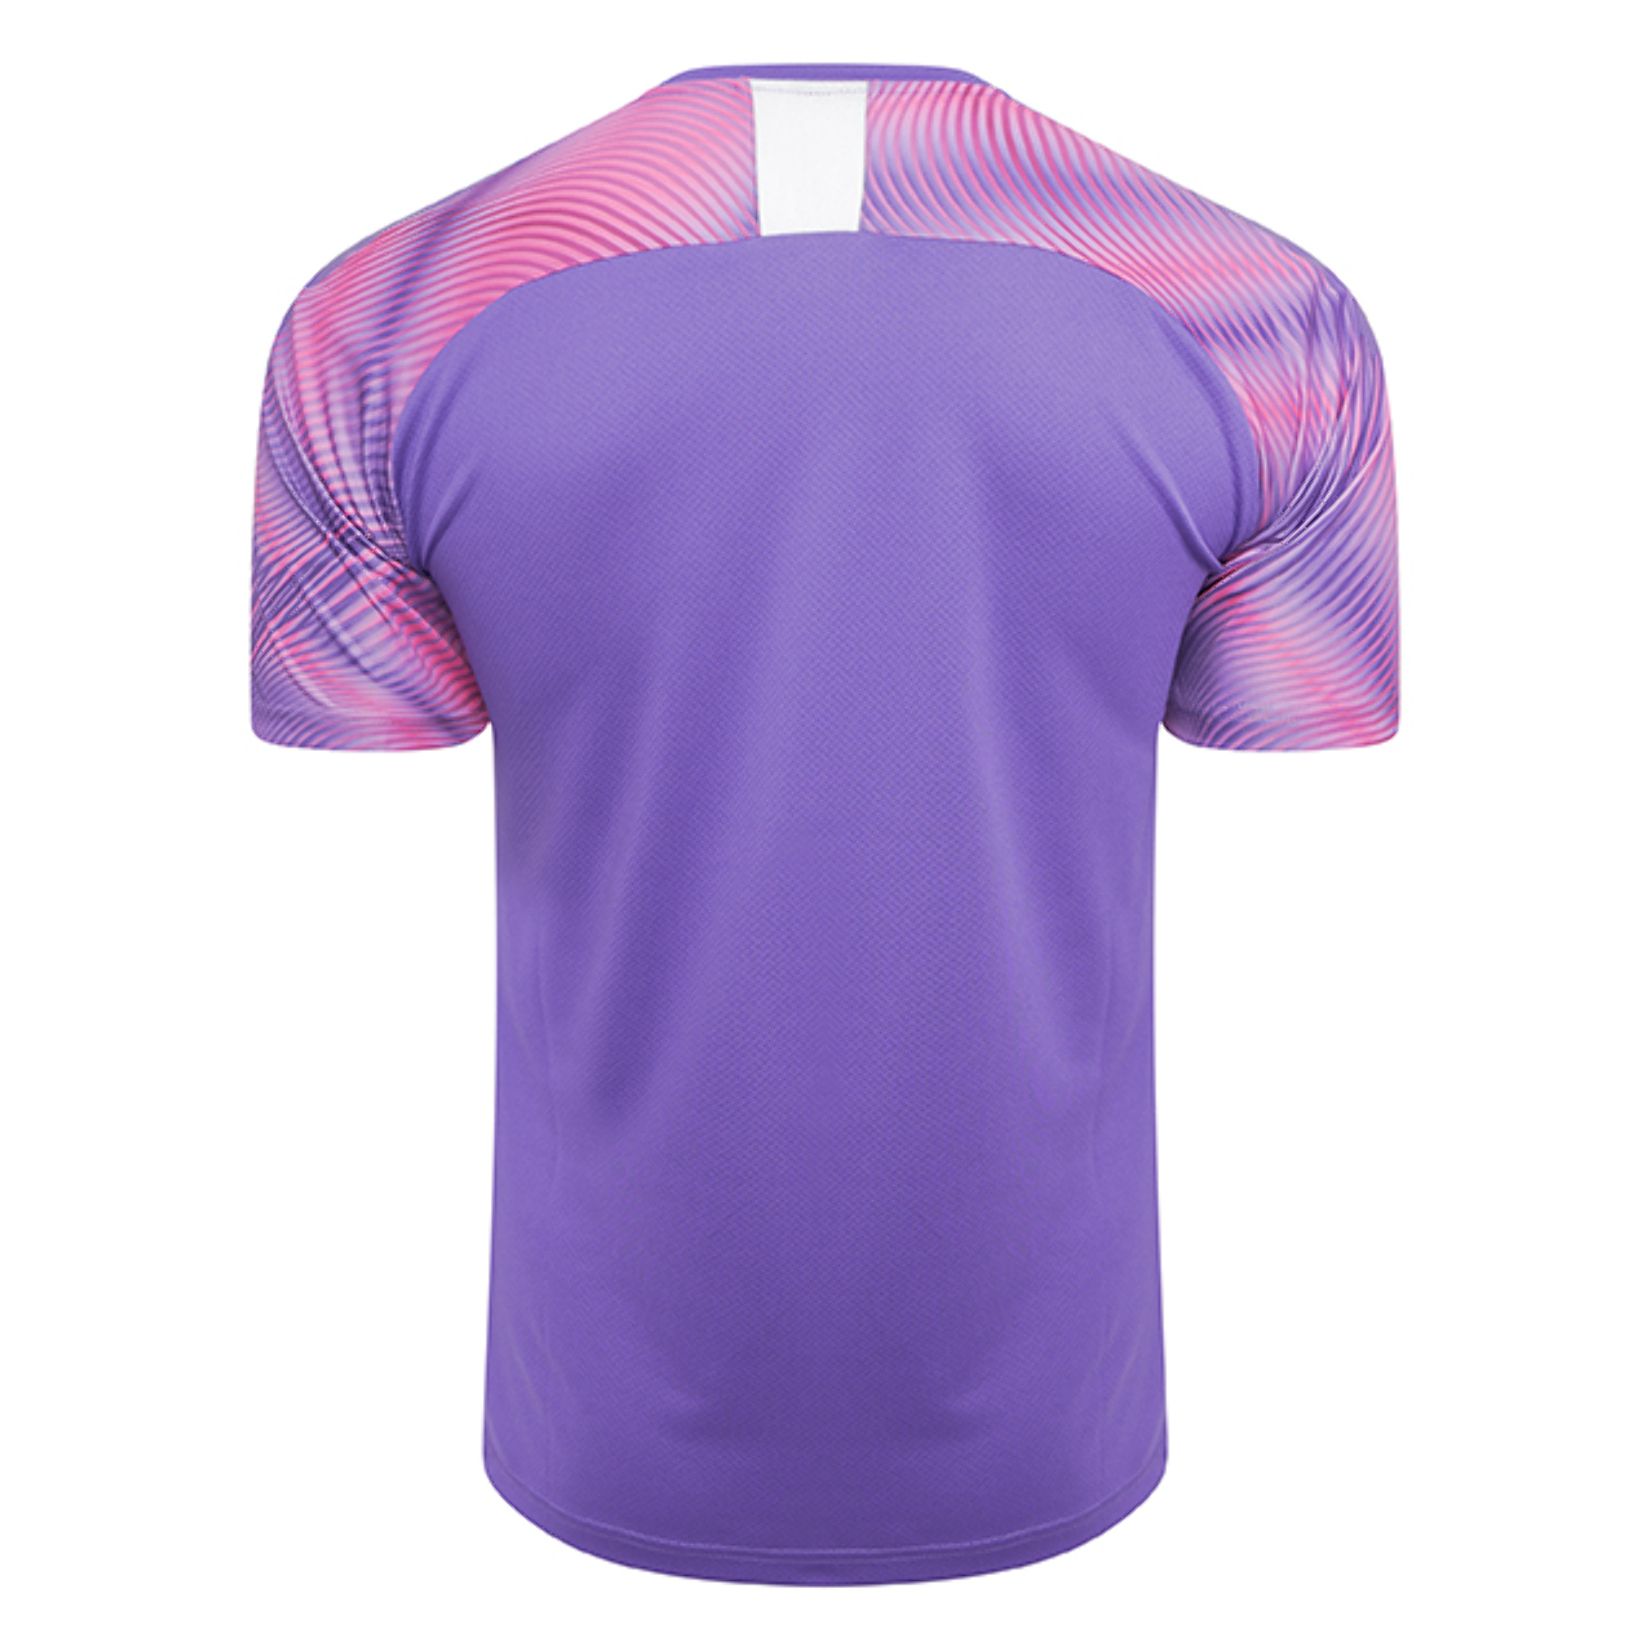 Puma Cup Short Sleeve Match Jersey - Kitlocker.com